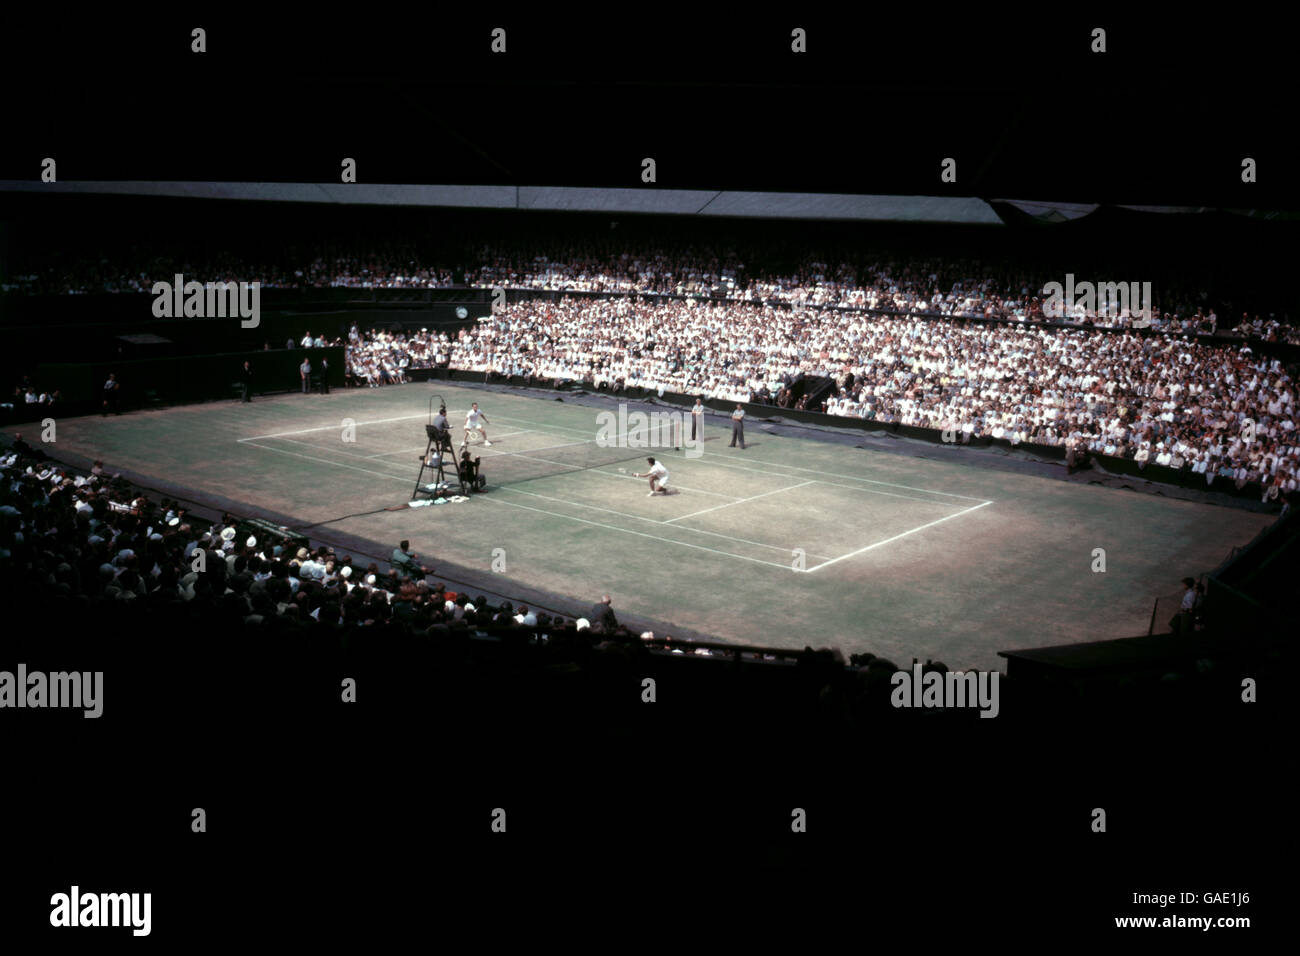 Vue générale du jeu sur le court du centre pendant les championnats de tennis de Wimbledon. Banque D'Images